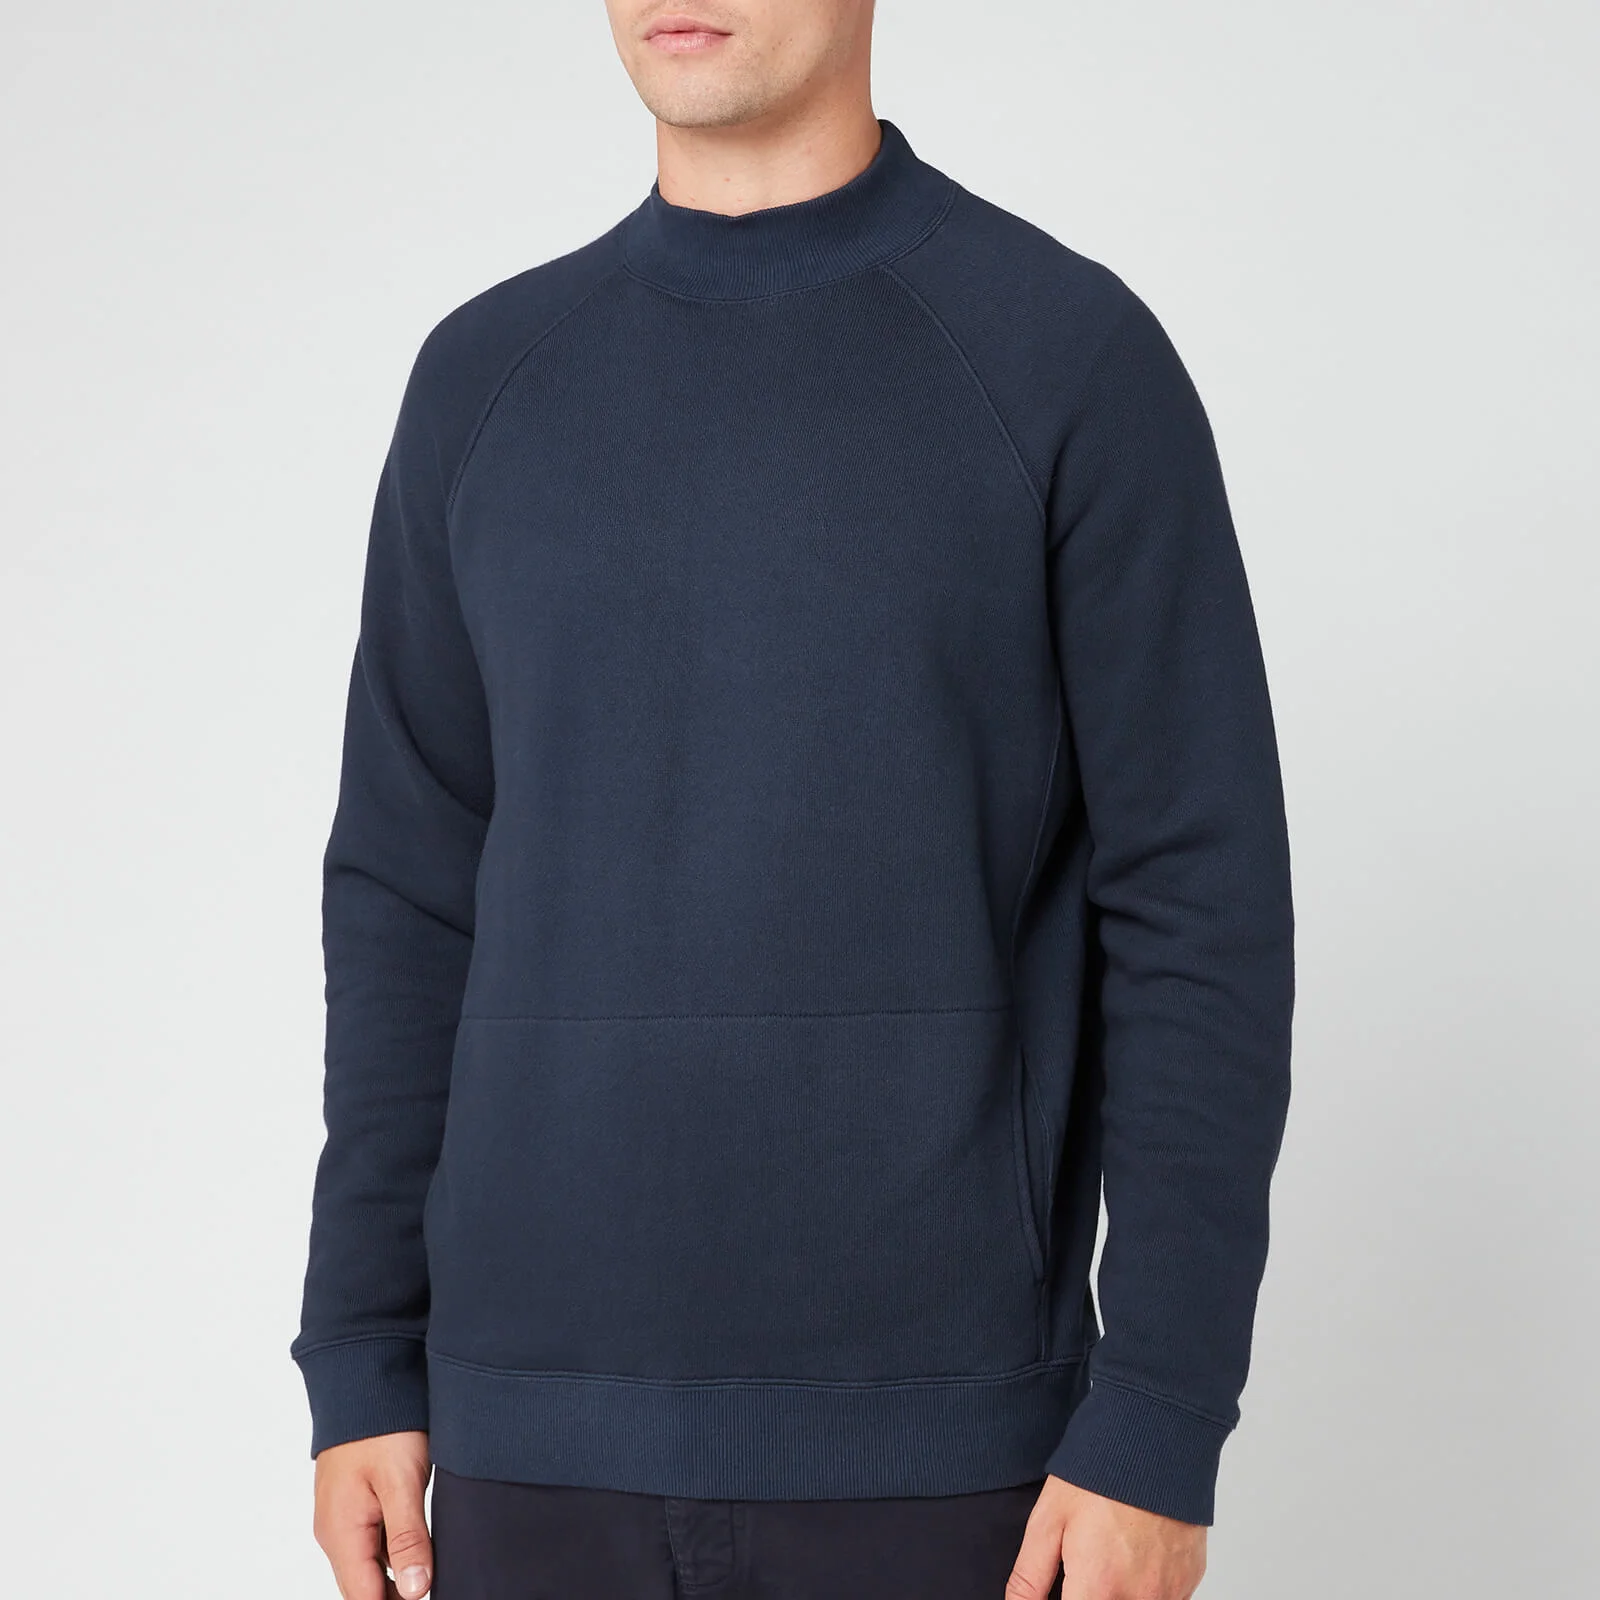 YMC Men's Touch Pocket Sweatshirt - Navy Image 1